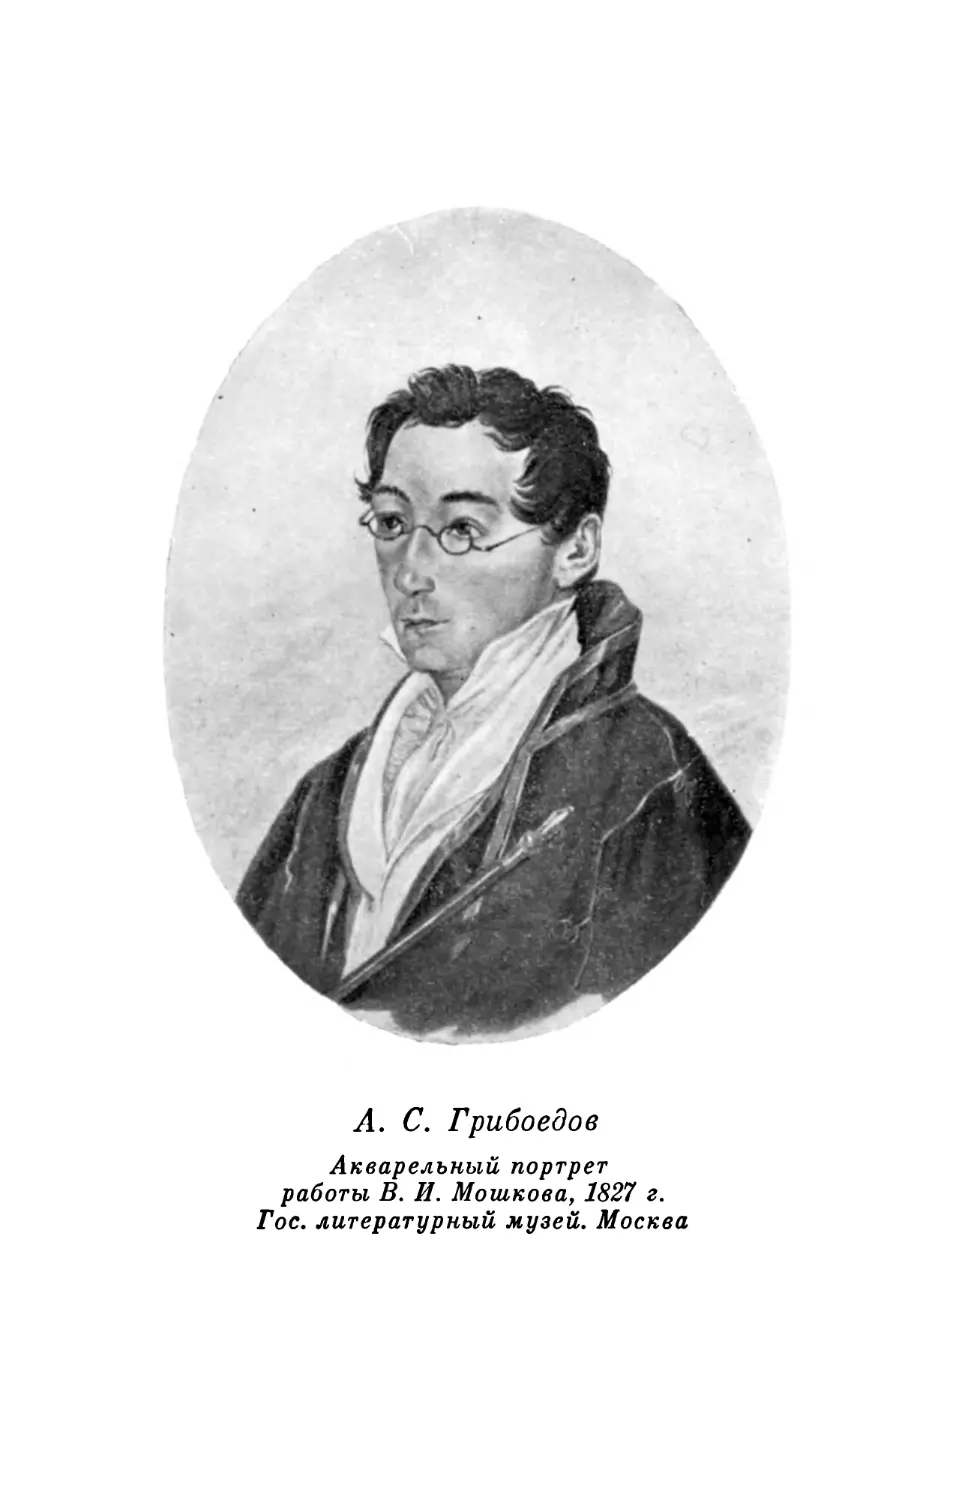 А. С. Грибоедов. Акварельный портрет работы В. И. Мошкова, 1827 г.